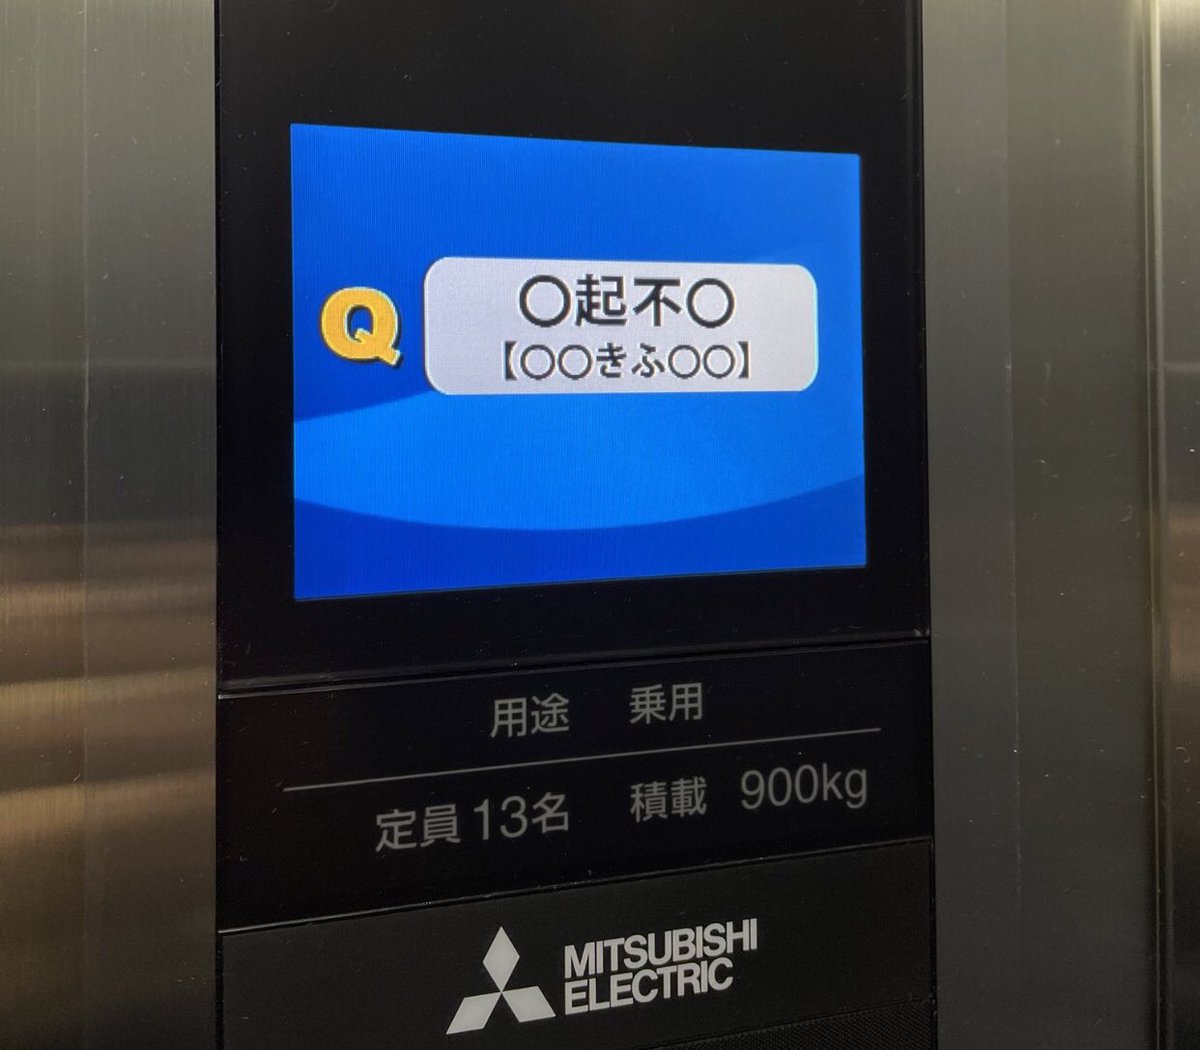 三菱エレベーターの四字熟語クイズの伝説の問題、正直1つしか思いつかない件